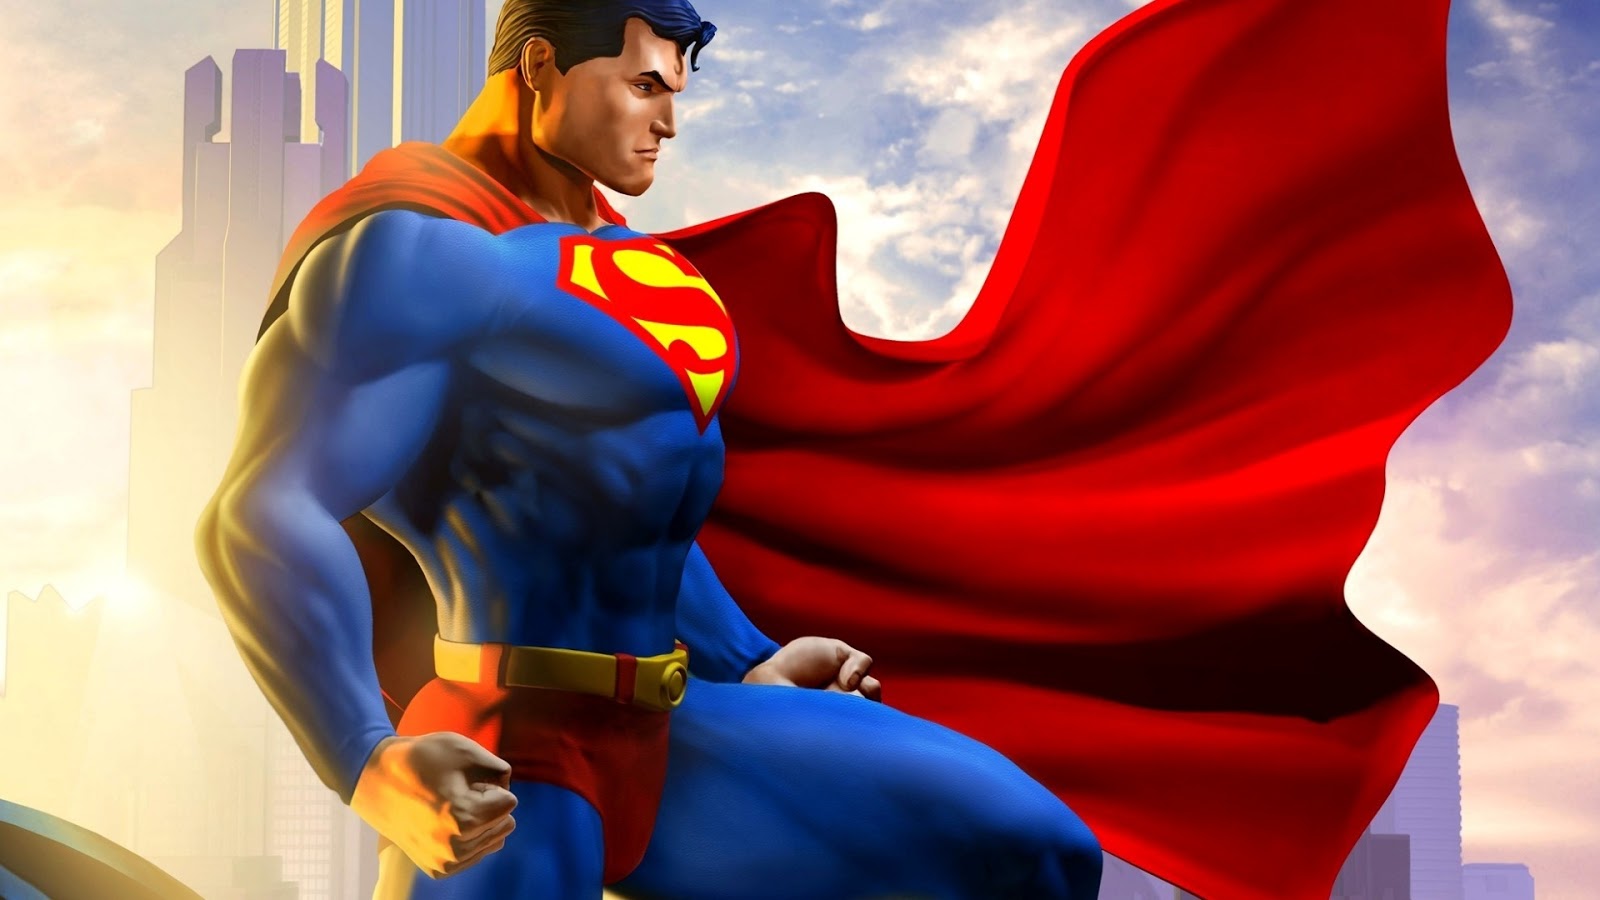 Igor11 Comics Games Of Superman Superman Games Free Download Igor11comics